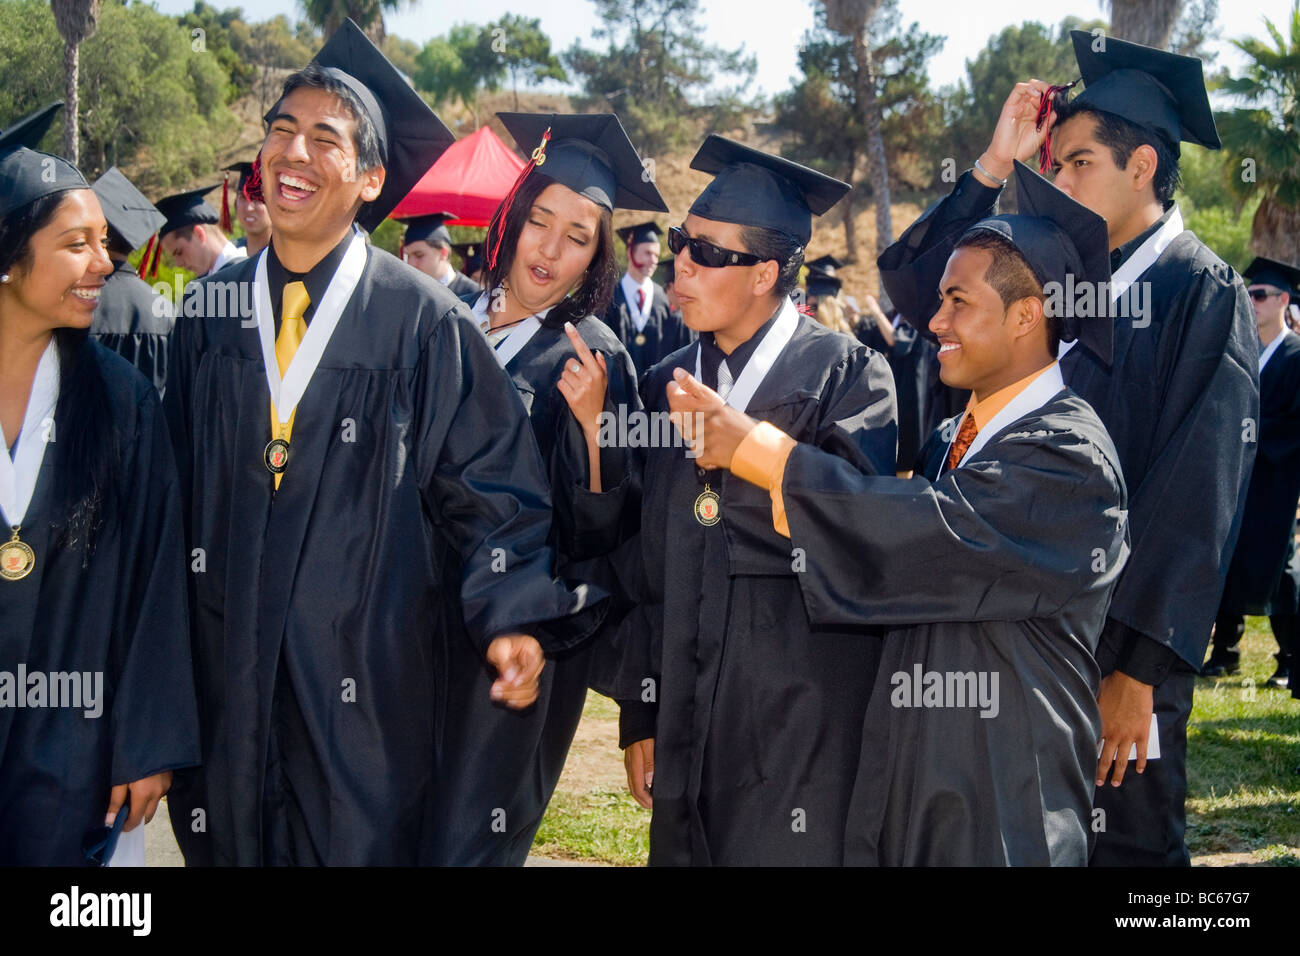 En su graduación de la escuela secundaria ejercicios en Costa Mesa, California, el director de la escuela le da un abrazo de felicitación a un estudiante hispano de graduación. Foto de stock